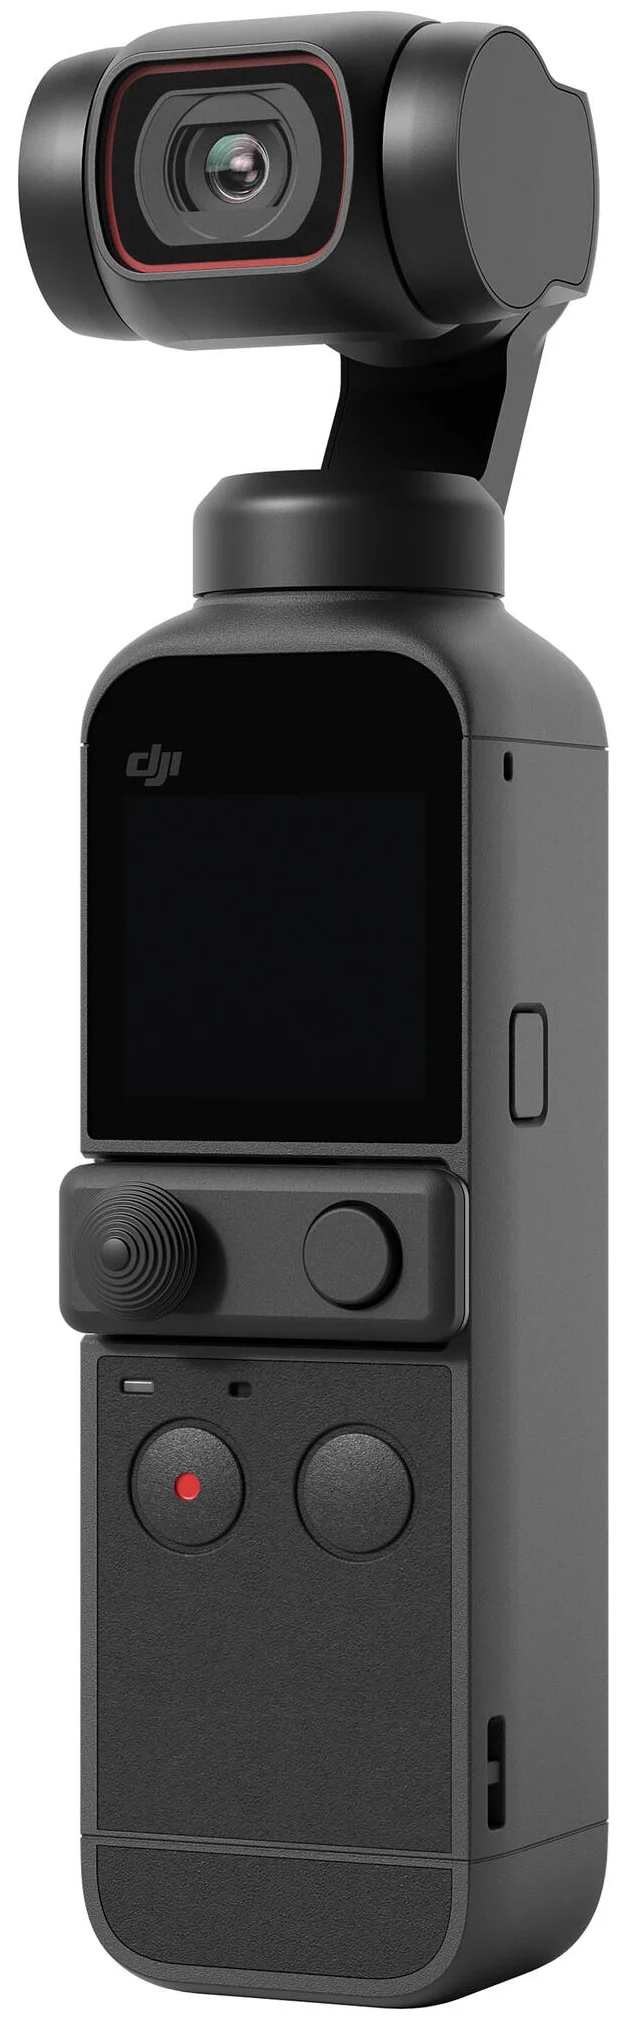 DJI Pocket 2 Creator Combo, 3840x2160, 875 - максимальная частота кадров при 4K: 60 к/с